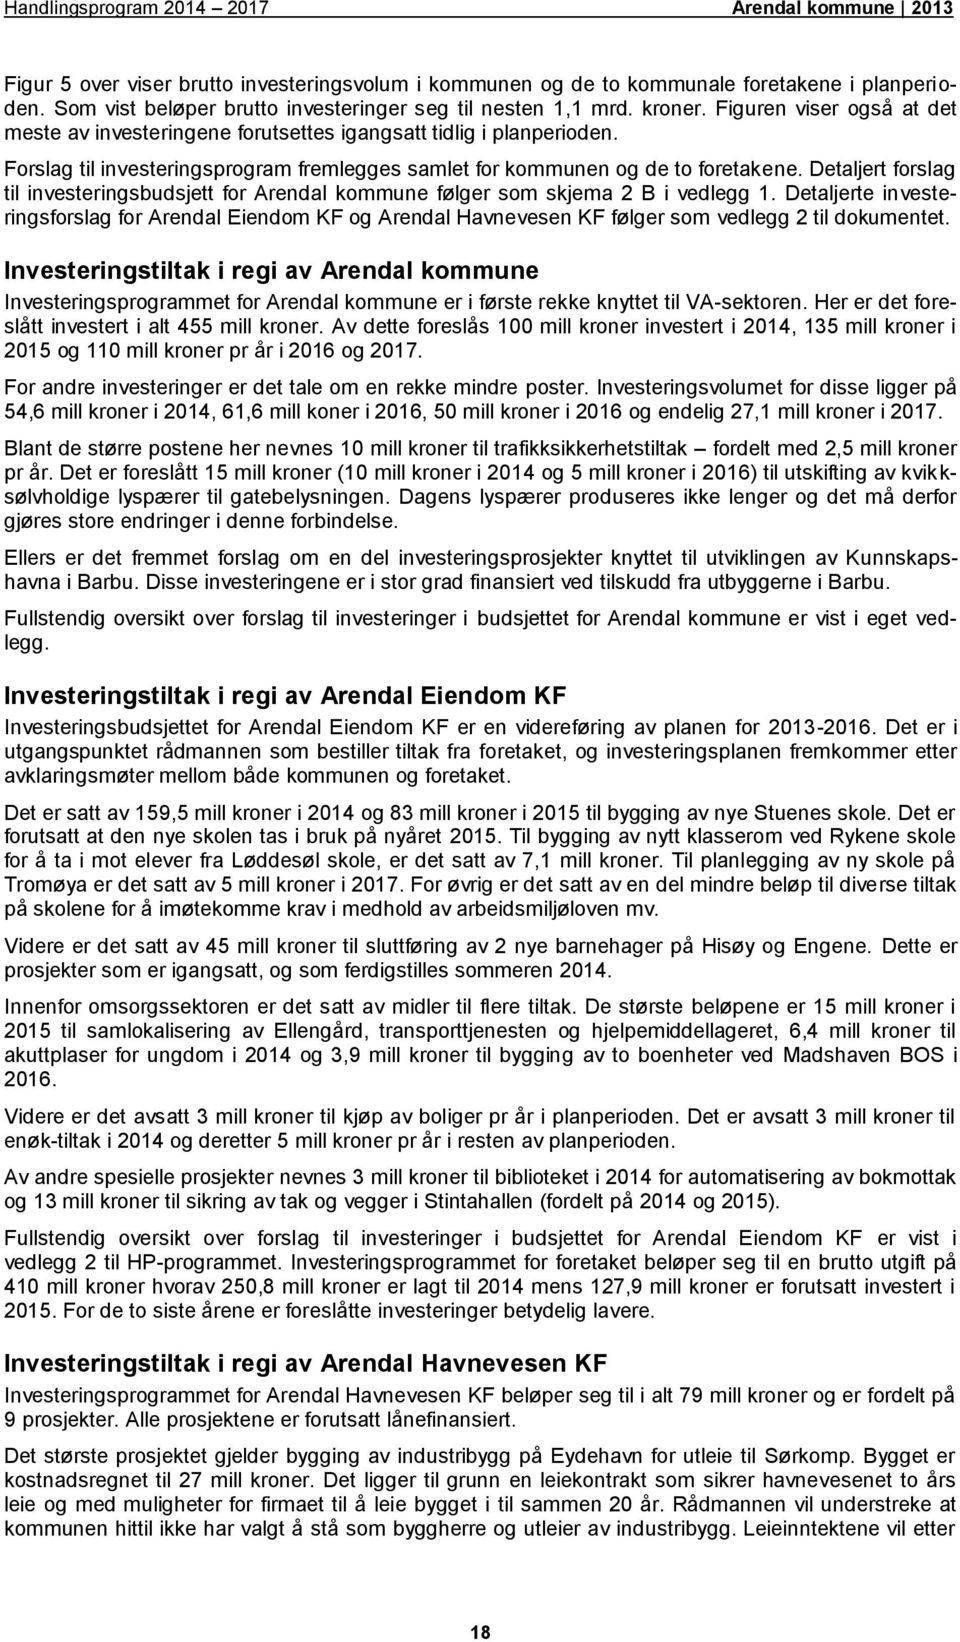 Detaljert forslag til investeringsbudsjett for Arendal kommune følger som skjema 2 B i vedlegg 1.